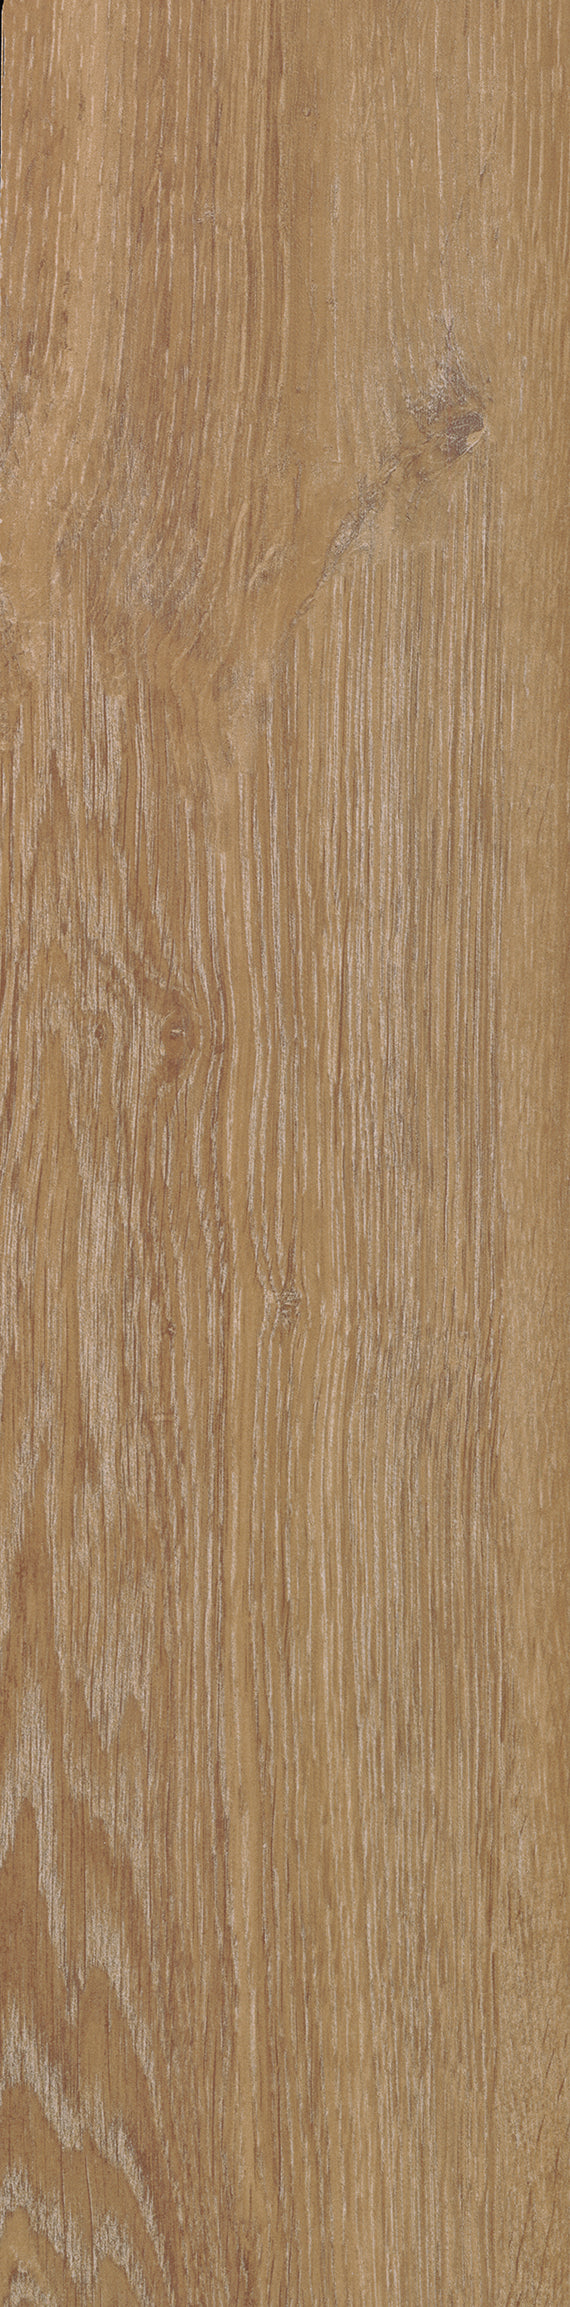 Wooden Floor Plank Tiles